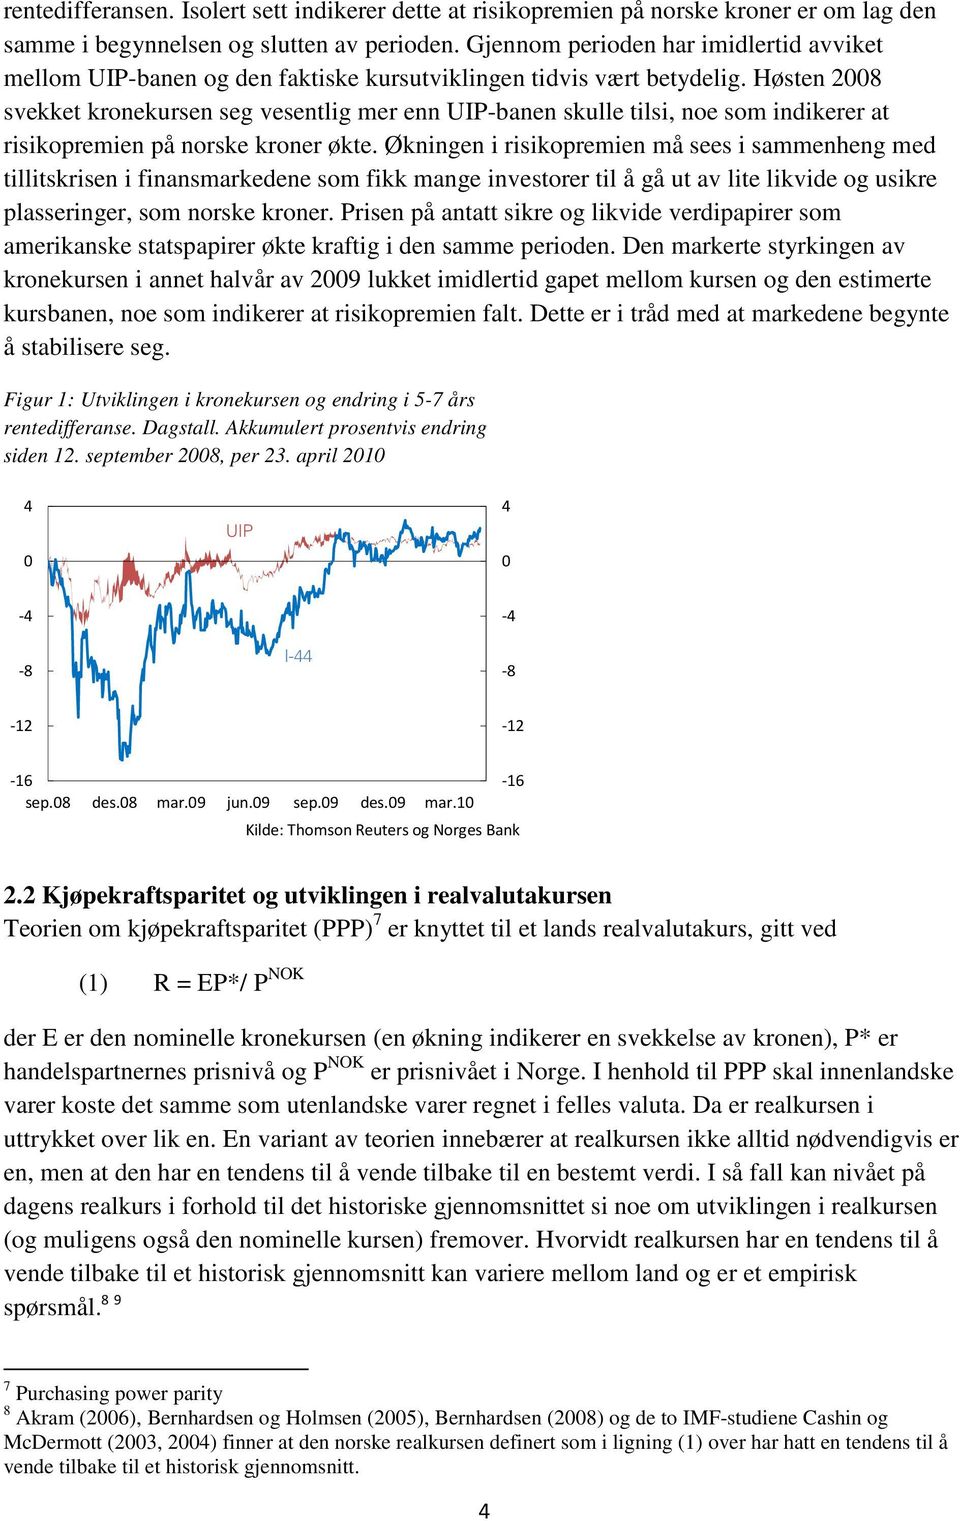 Høsten 28 svekket kronekursen seg vesentlig mer enn UIP-banen skulle tilsi, noe som indikerer at risikopremien på norske kroner økte.